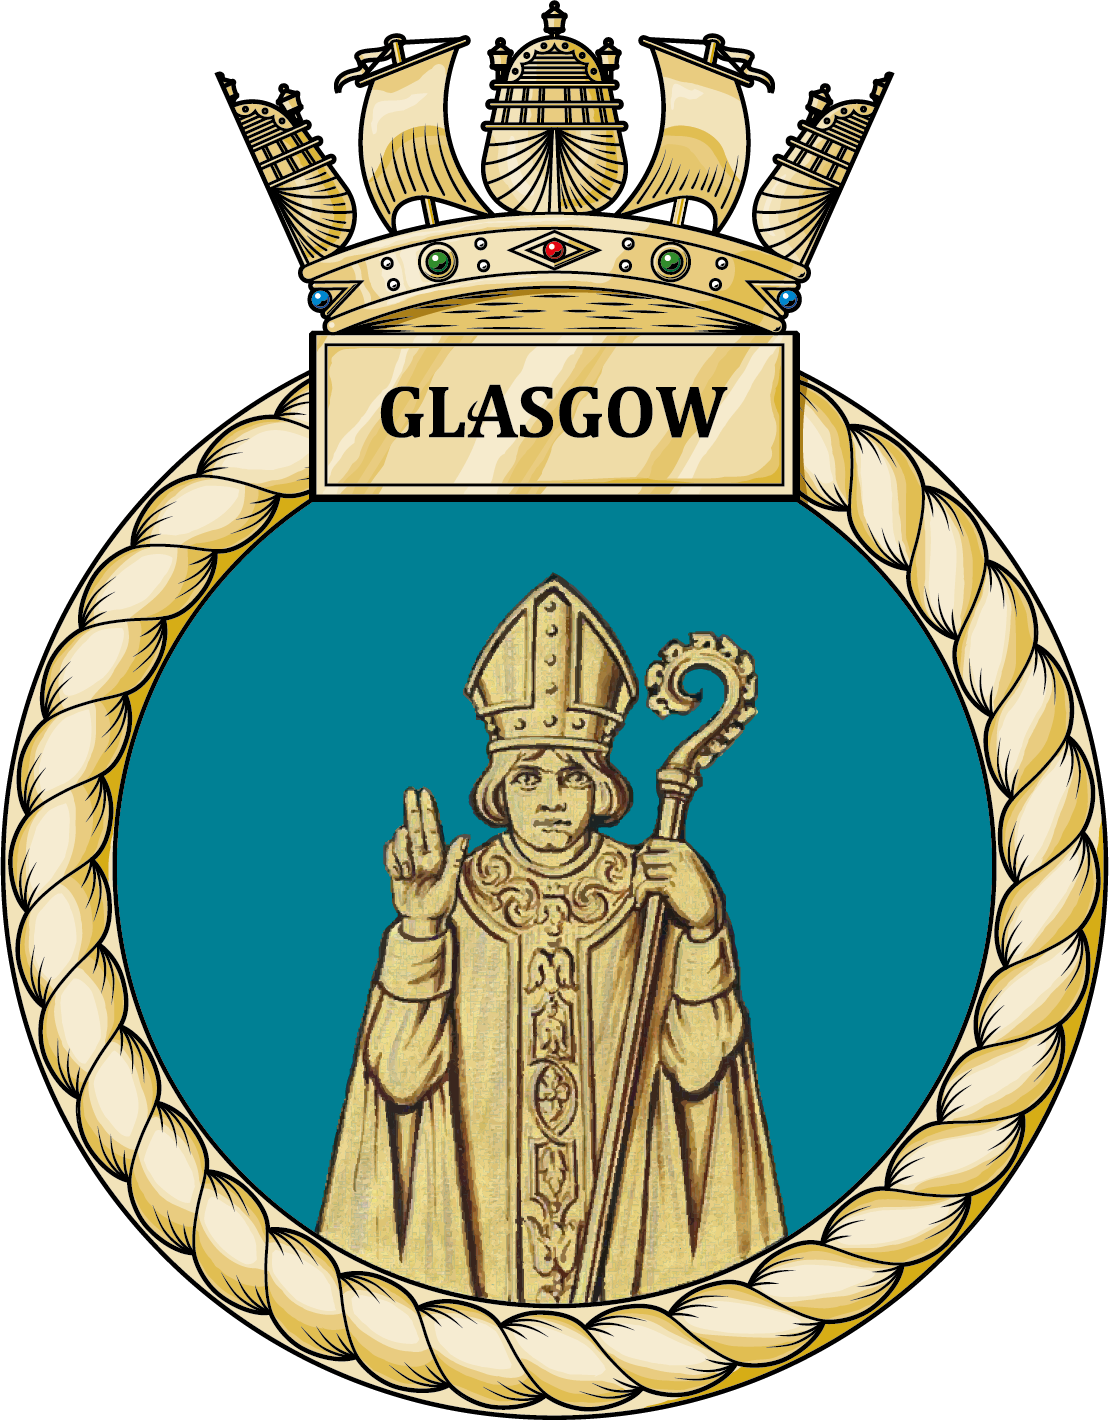 HMS Glasgow